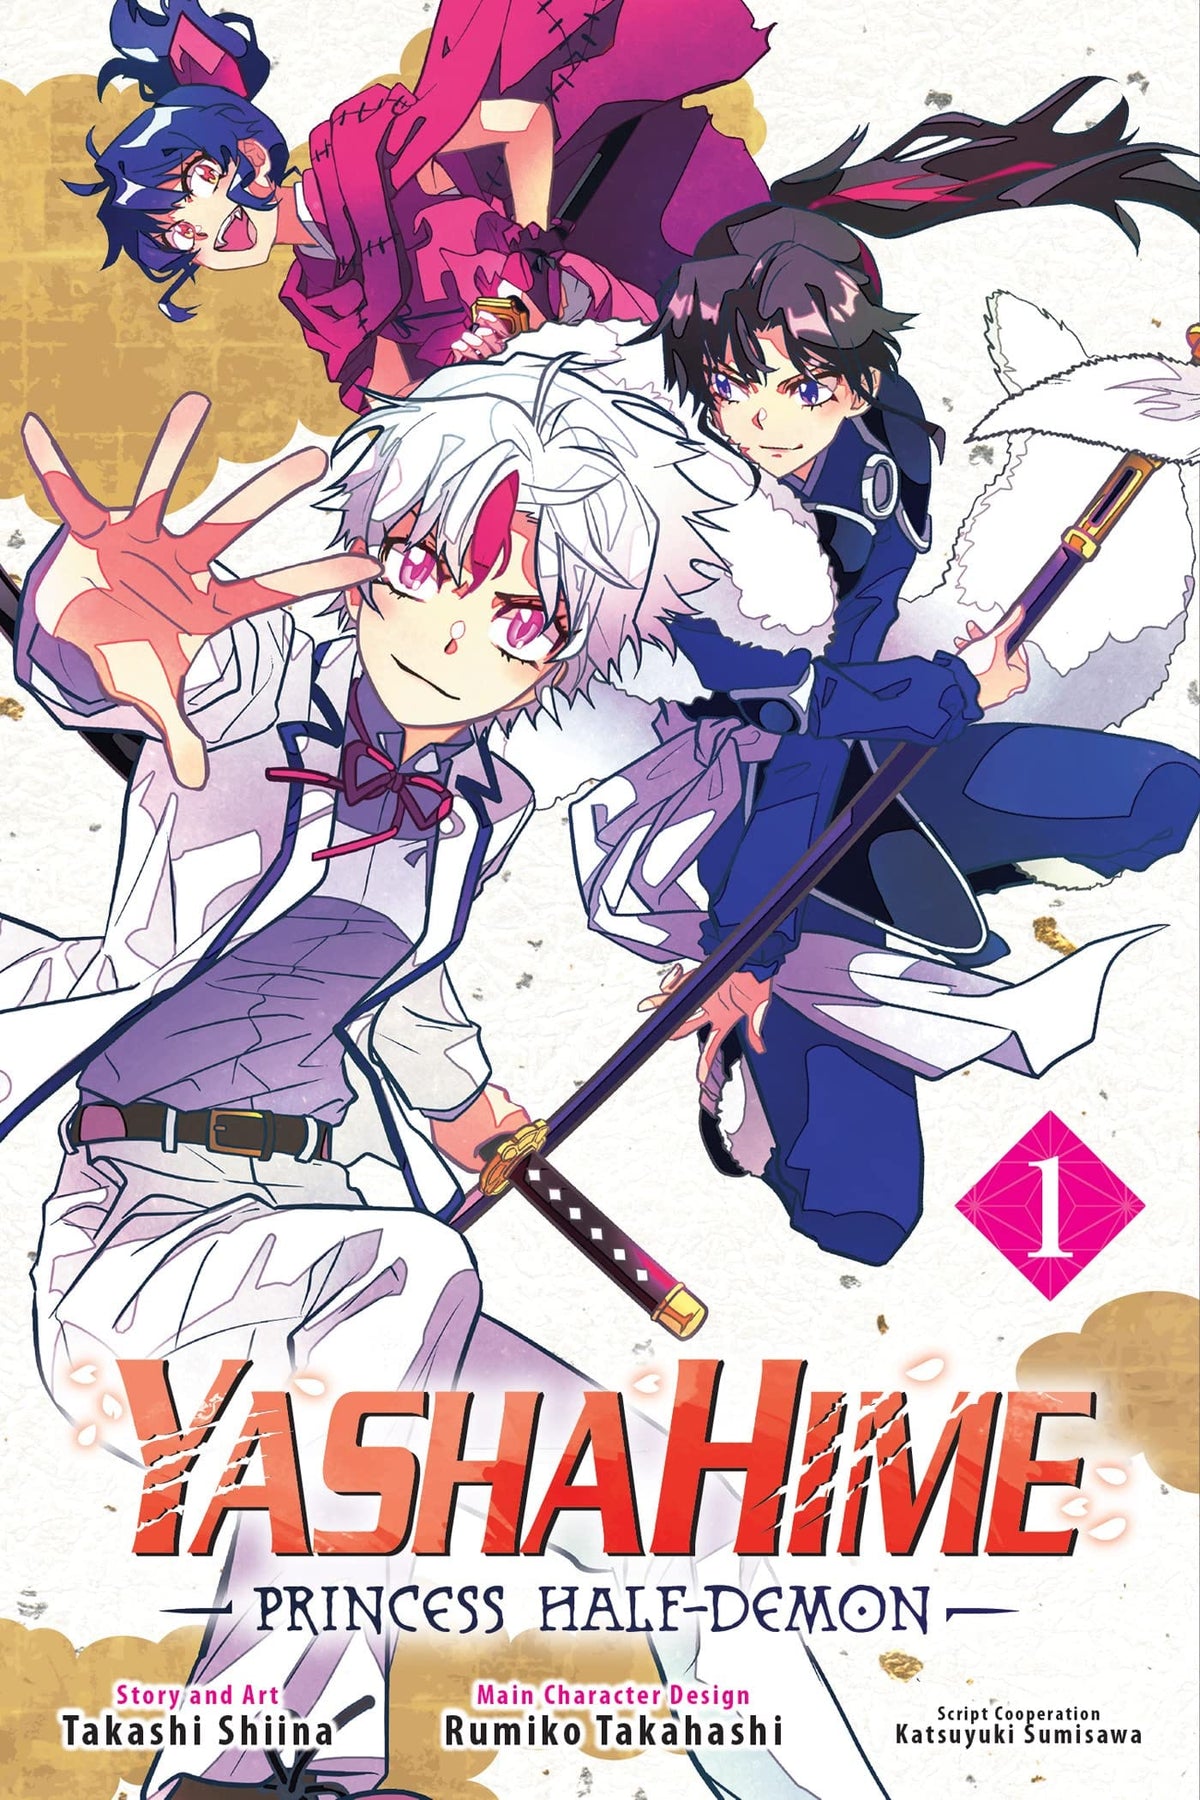 Yashahime: Princess Half-Demon Vol. 1 - Third Eye